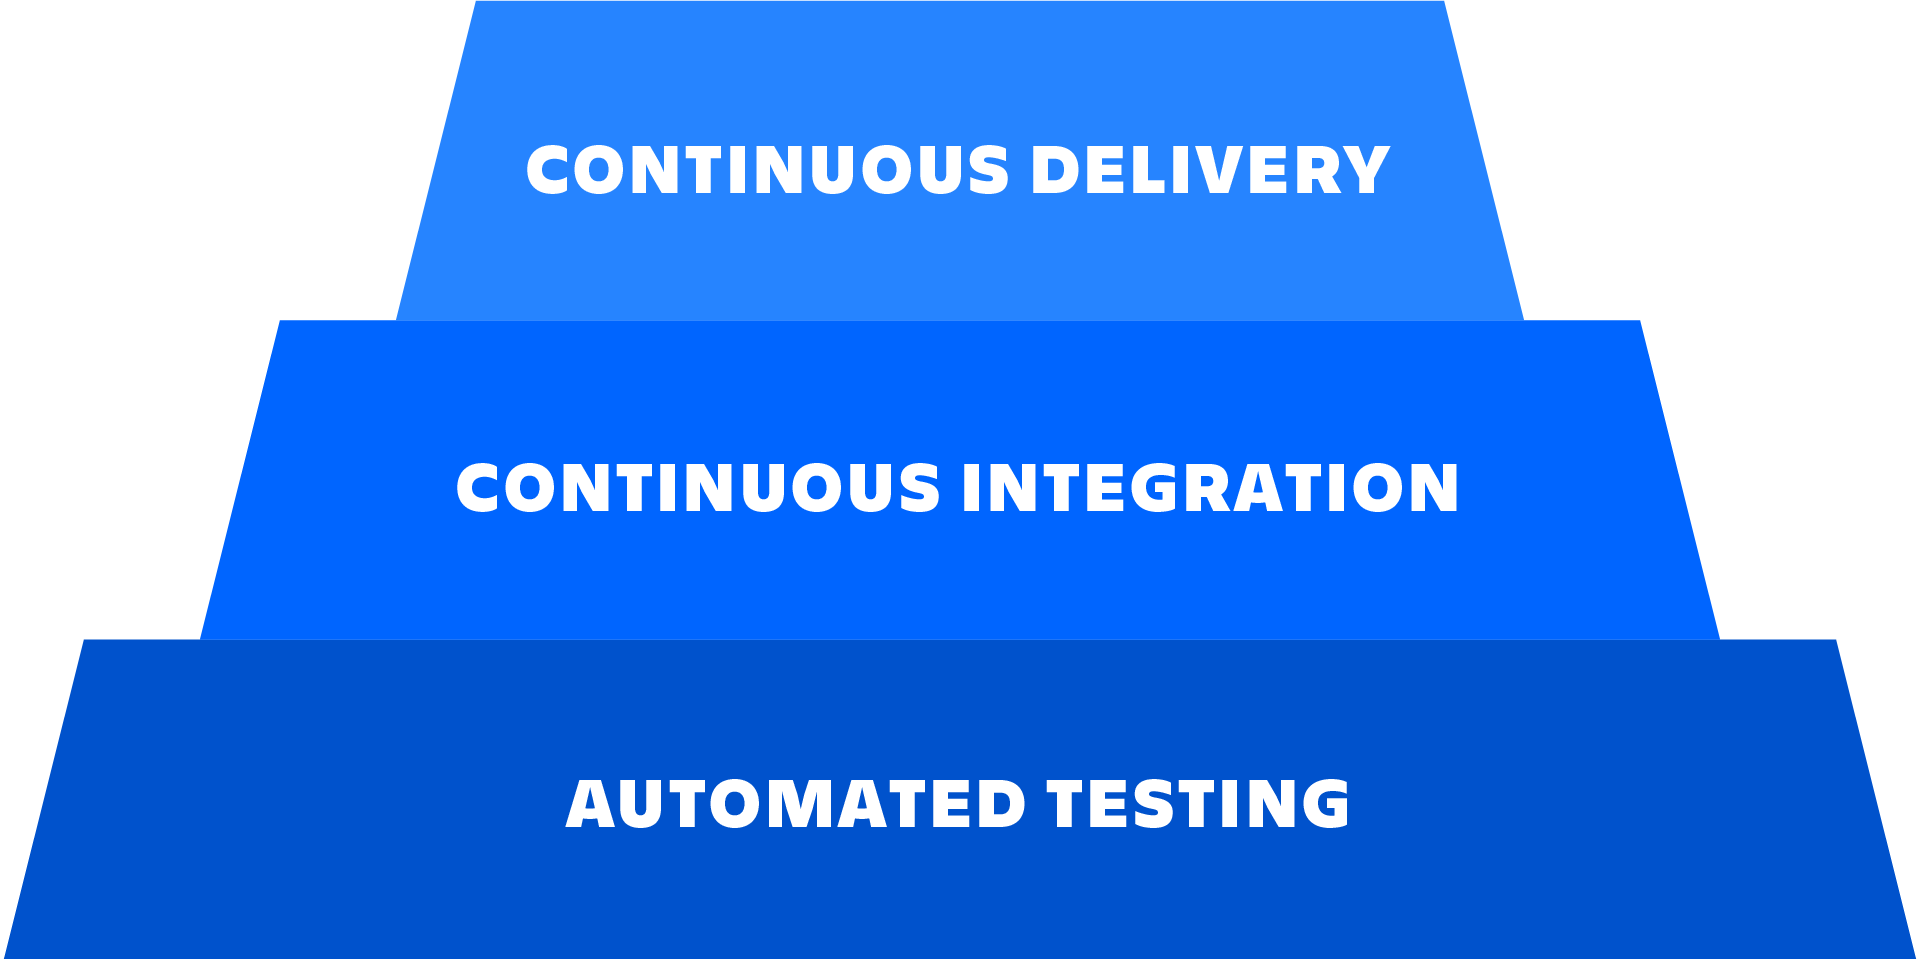 Схема взаимосвязей между автоматическим тестированием, непрерывной интеграцией и непрерывной поставкой.